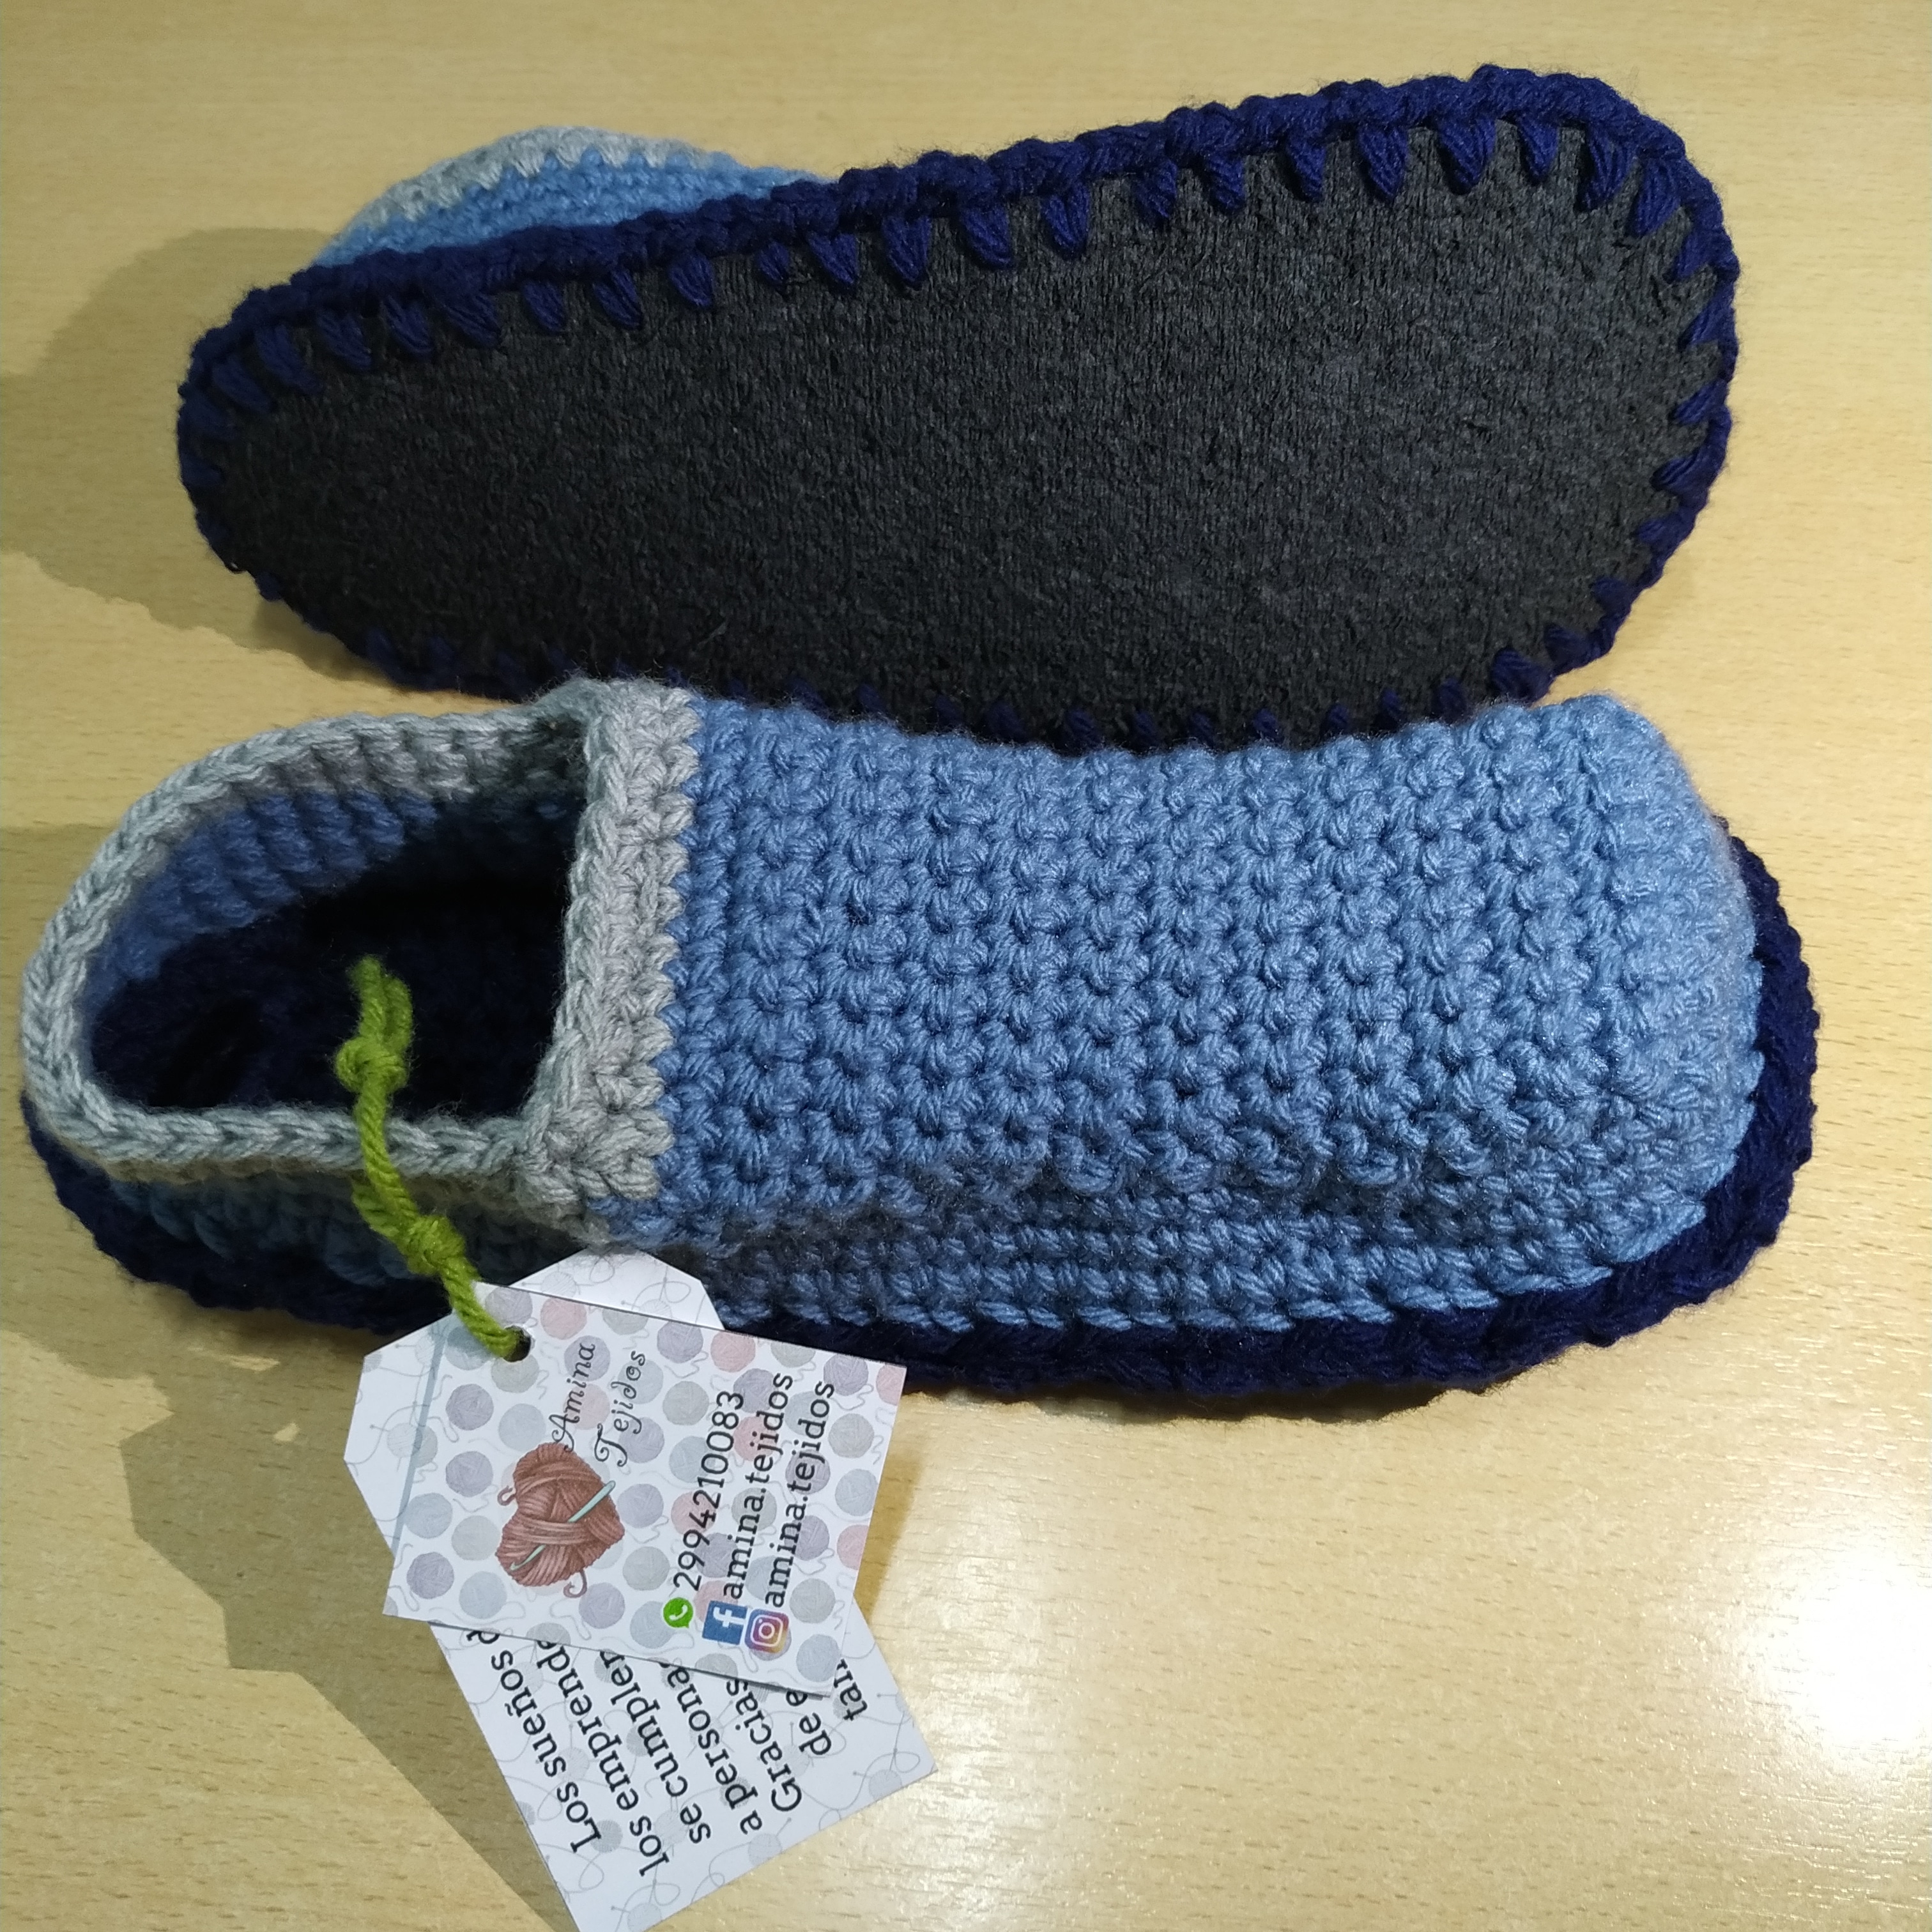 Patucos y guantes de lana adulto unisex artesanal para regalo.